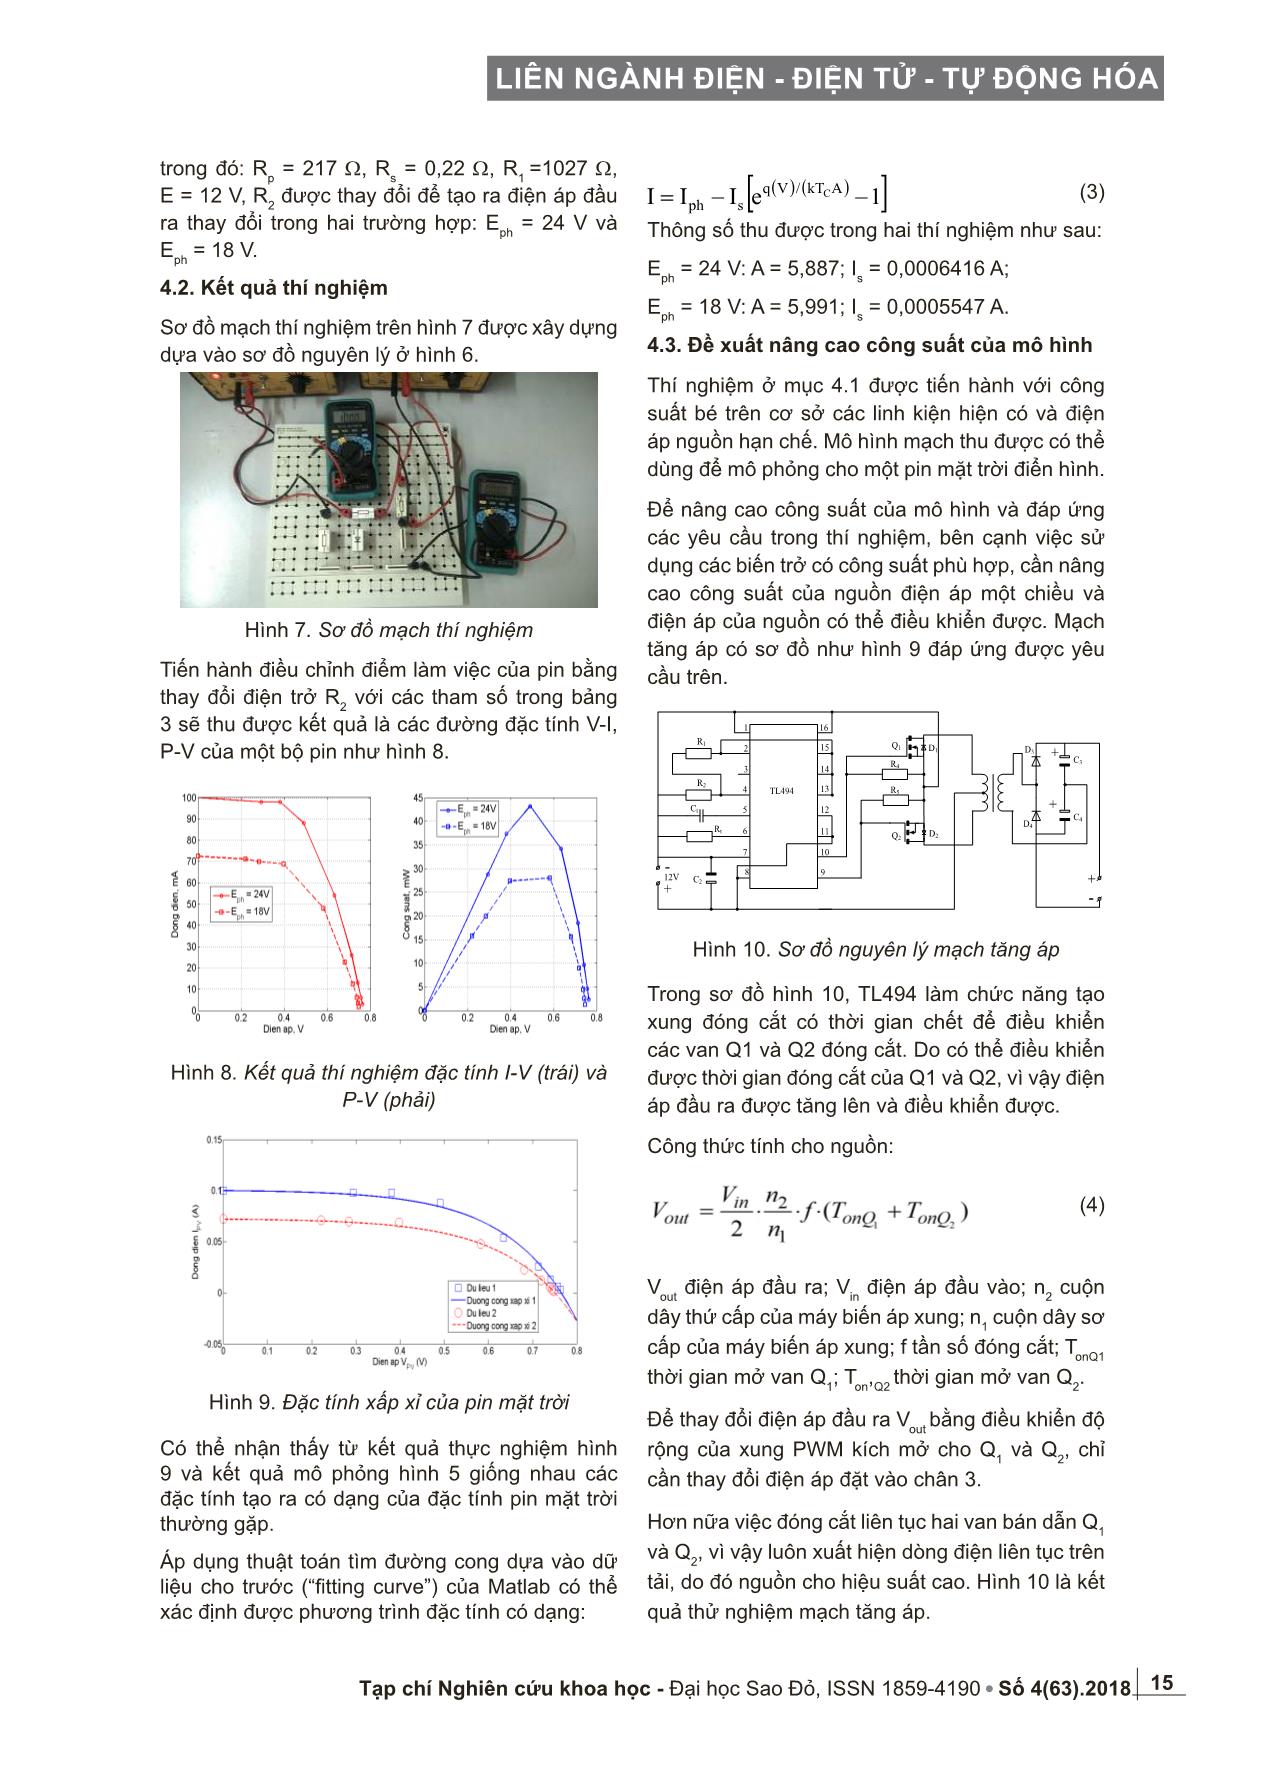 Nghiên cứu và phát triển mô hình vật lý của pin mặt trời trang 4